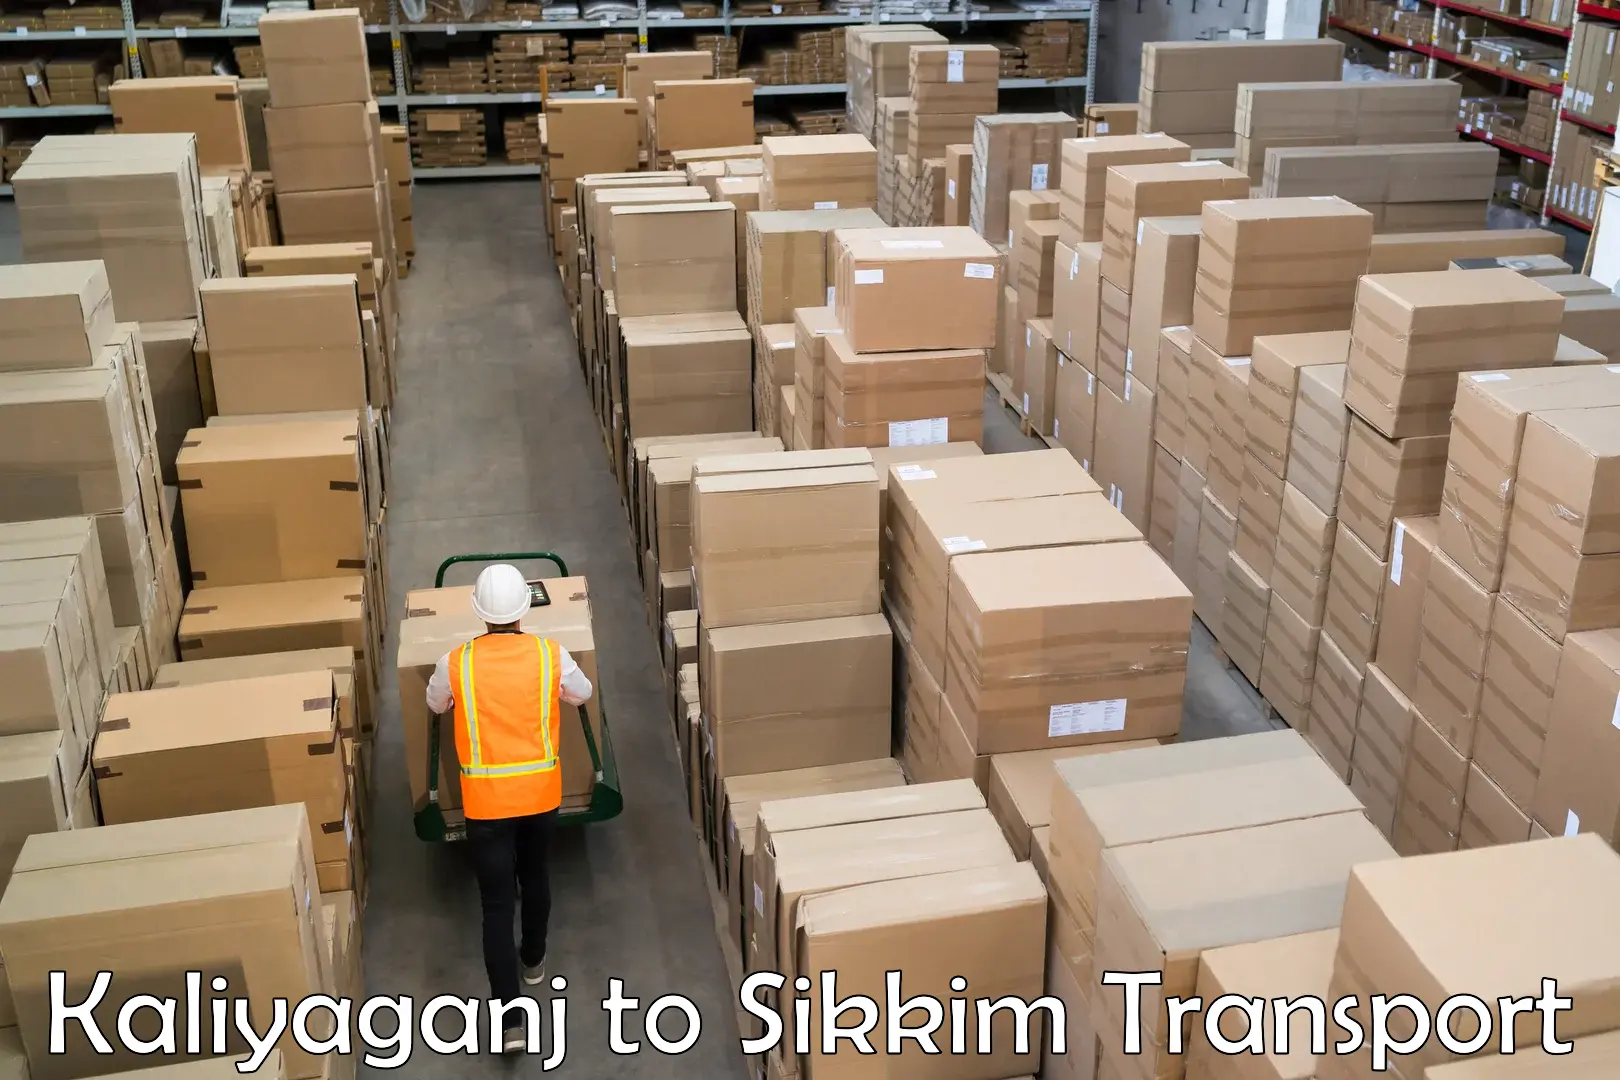 Daily parcel service transport Kaliyaganj to Singtam